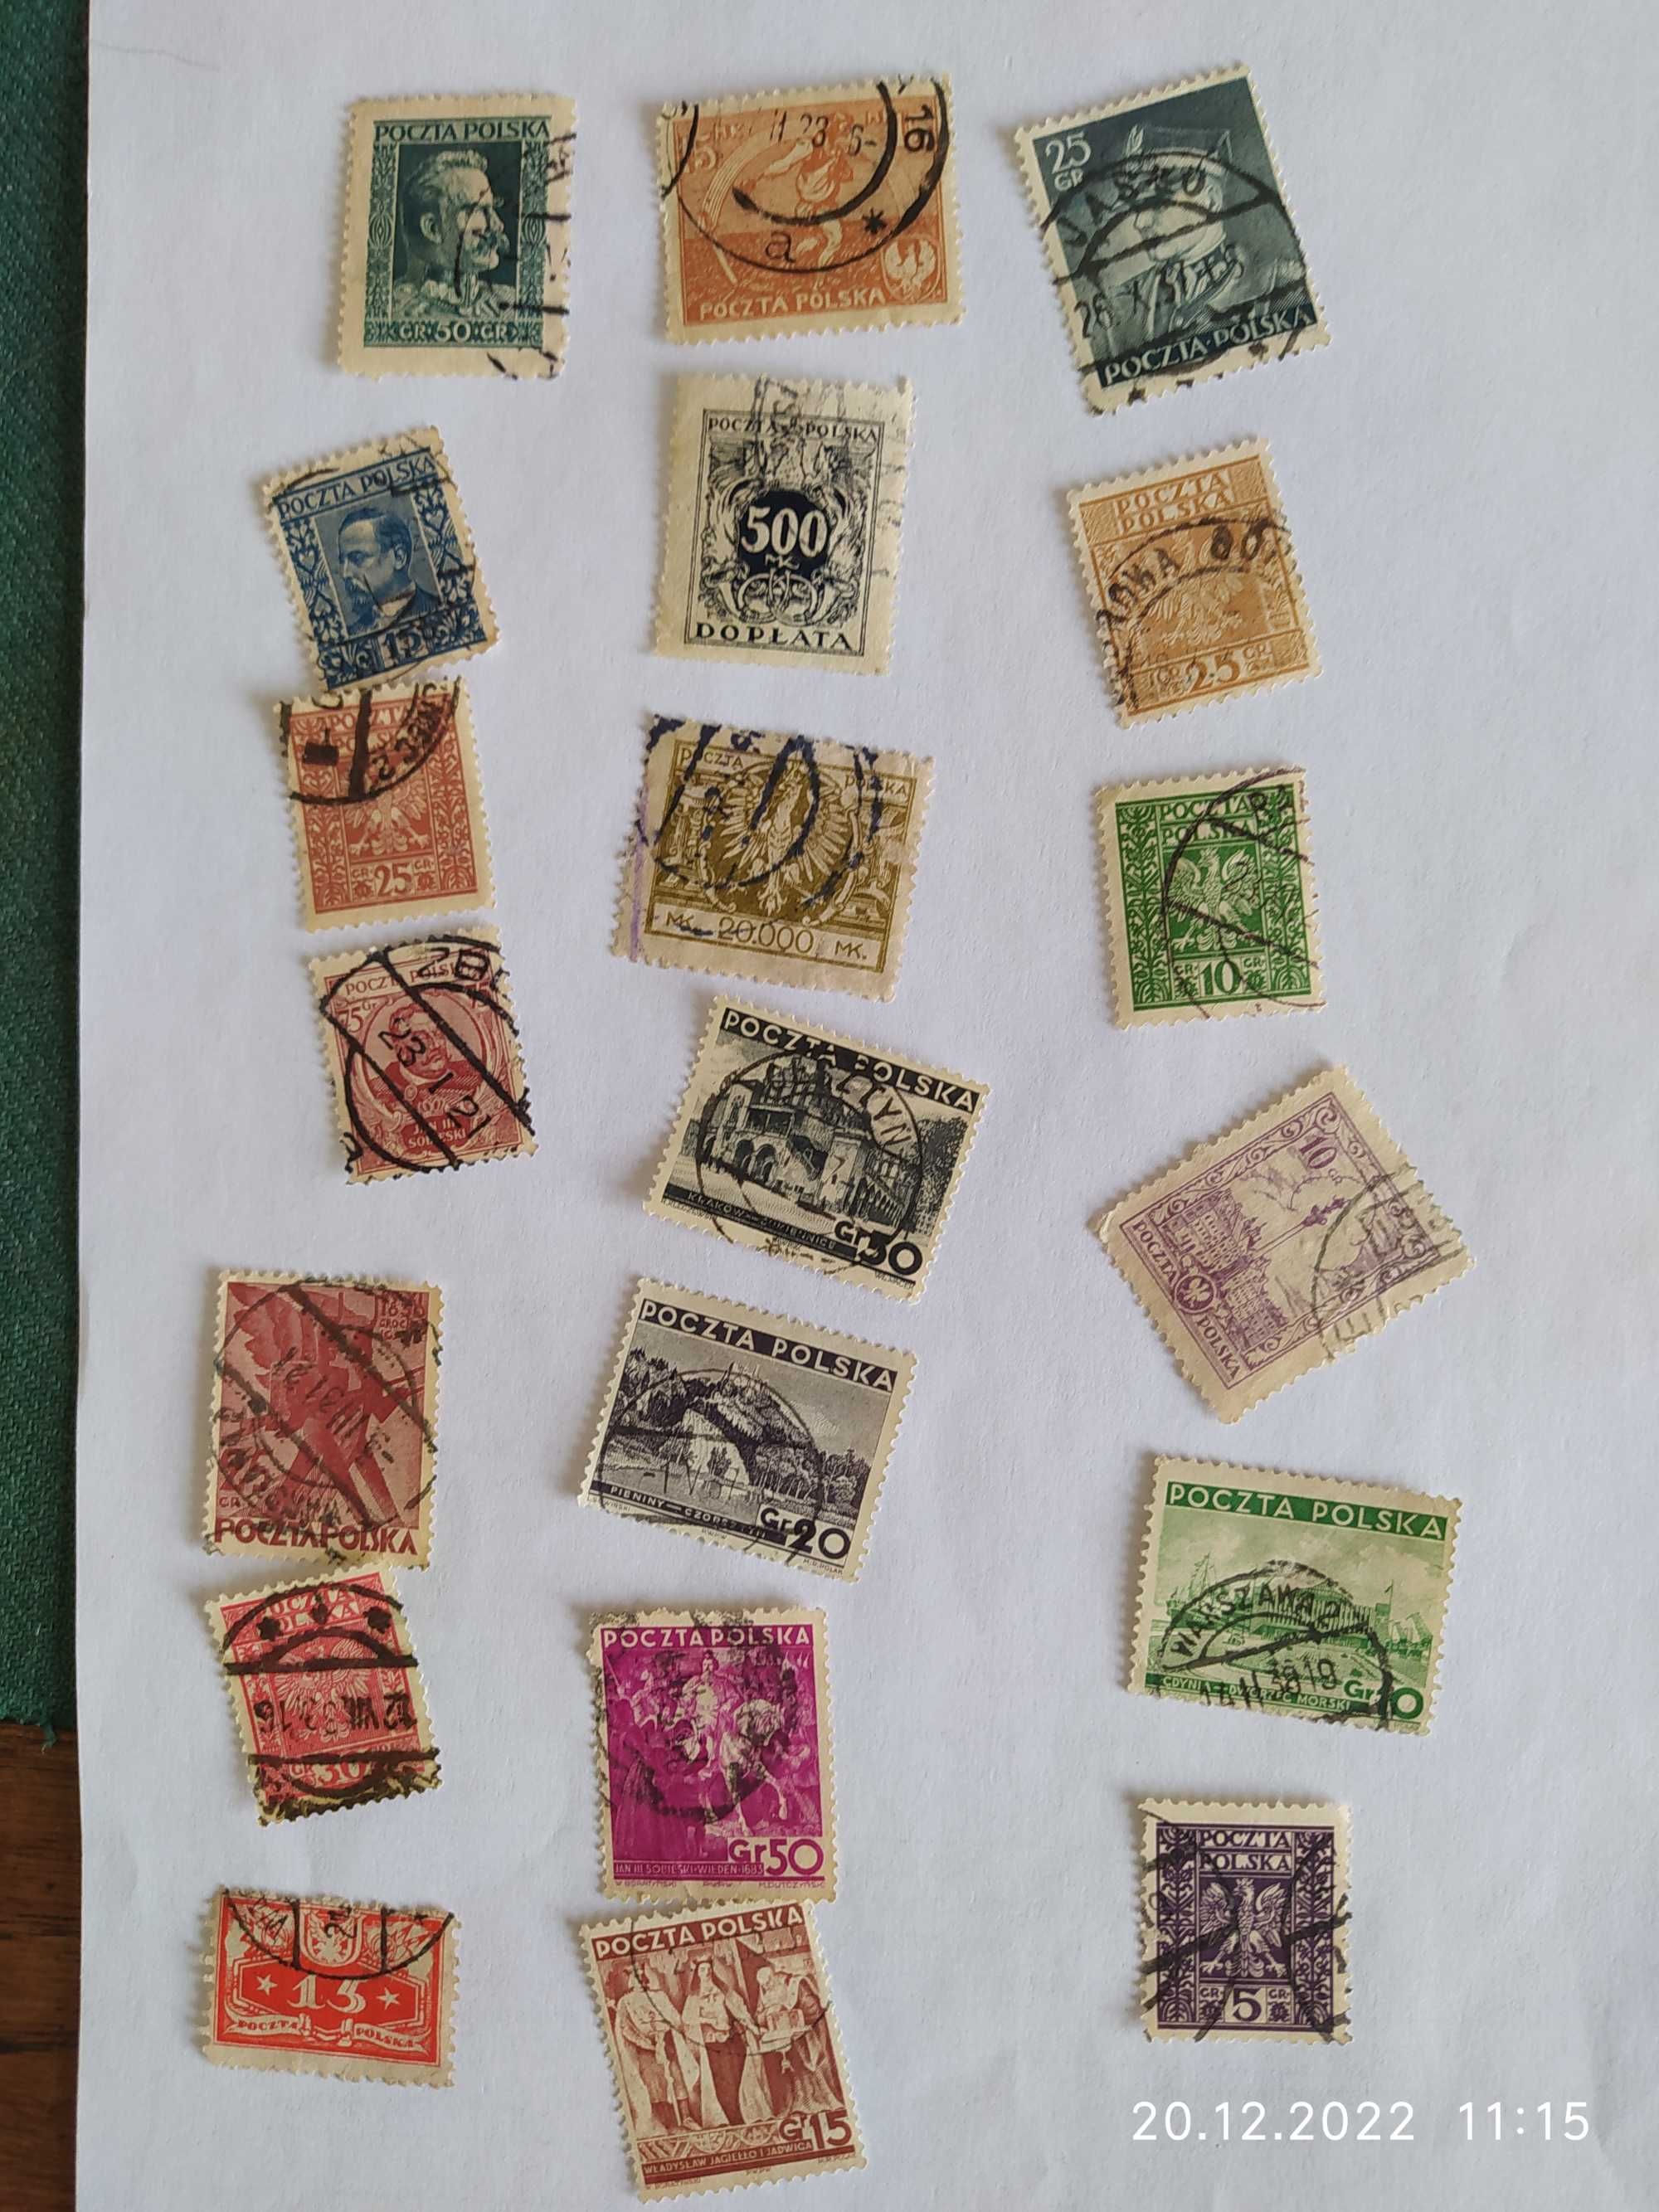 znaczki polskie stemplowane szt 20 z lat 1920-39